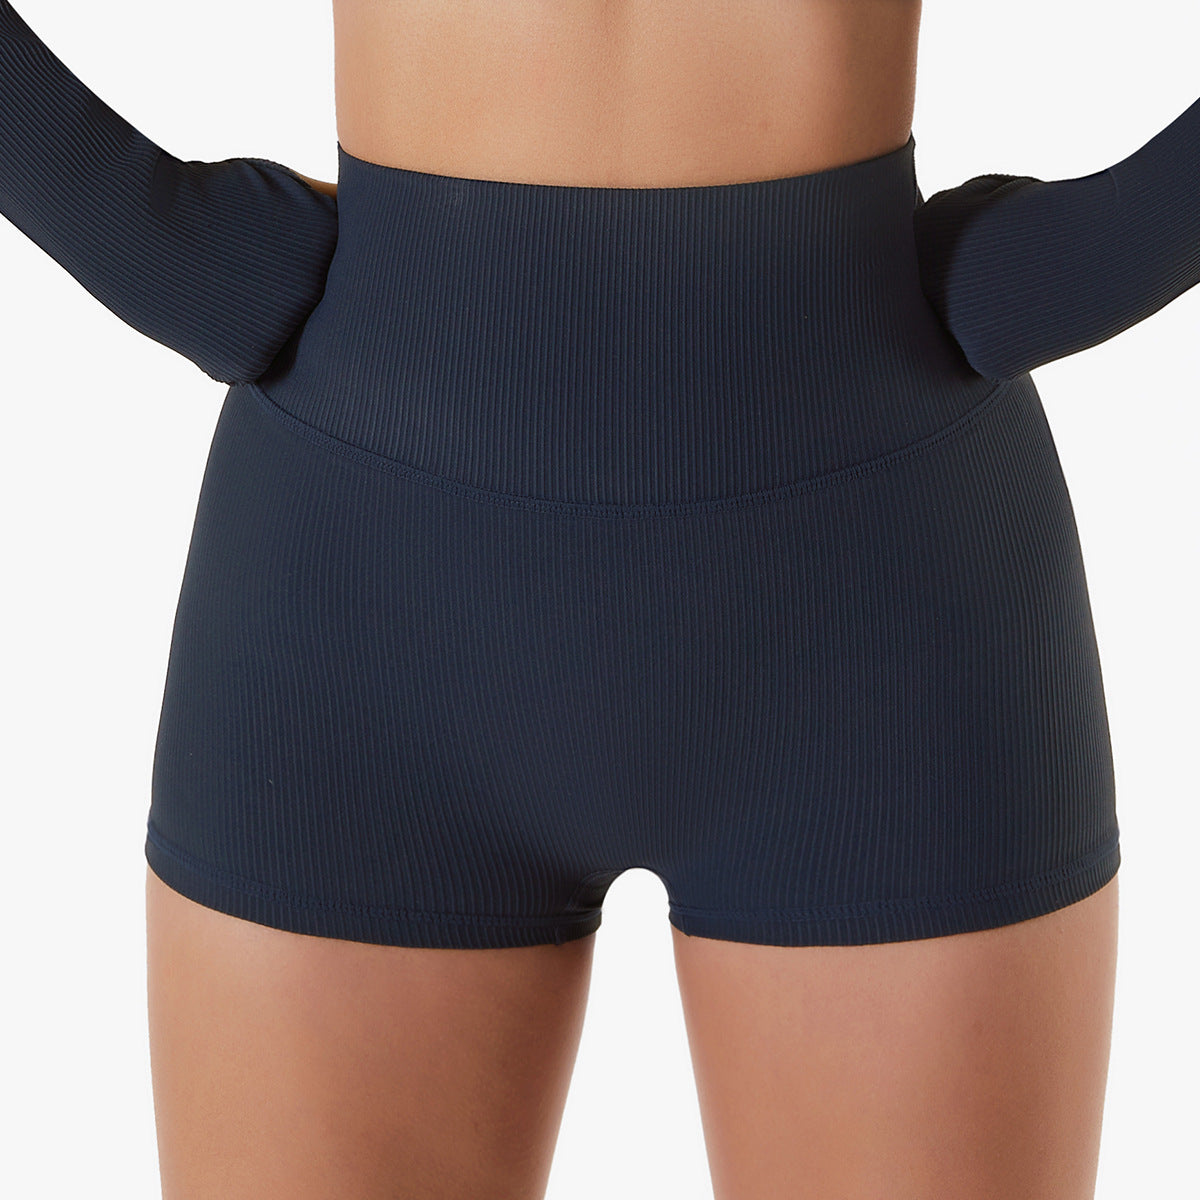 Wholesale women's butt lift tights short